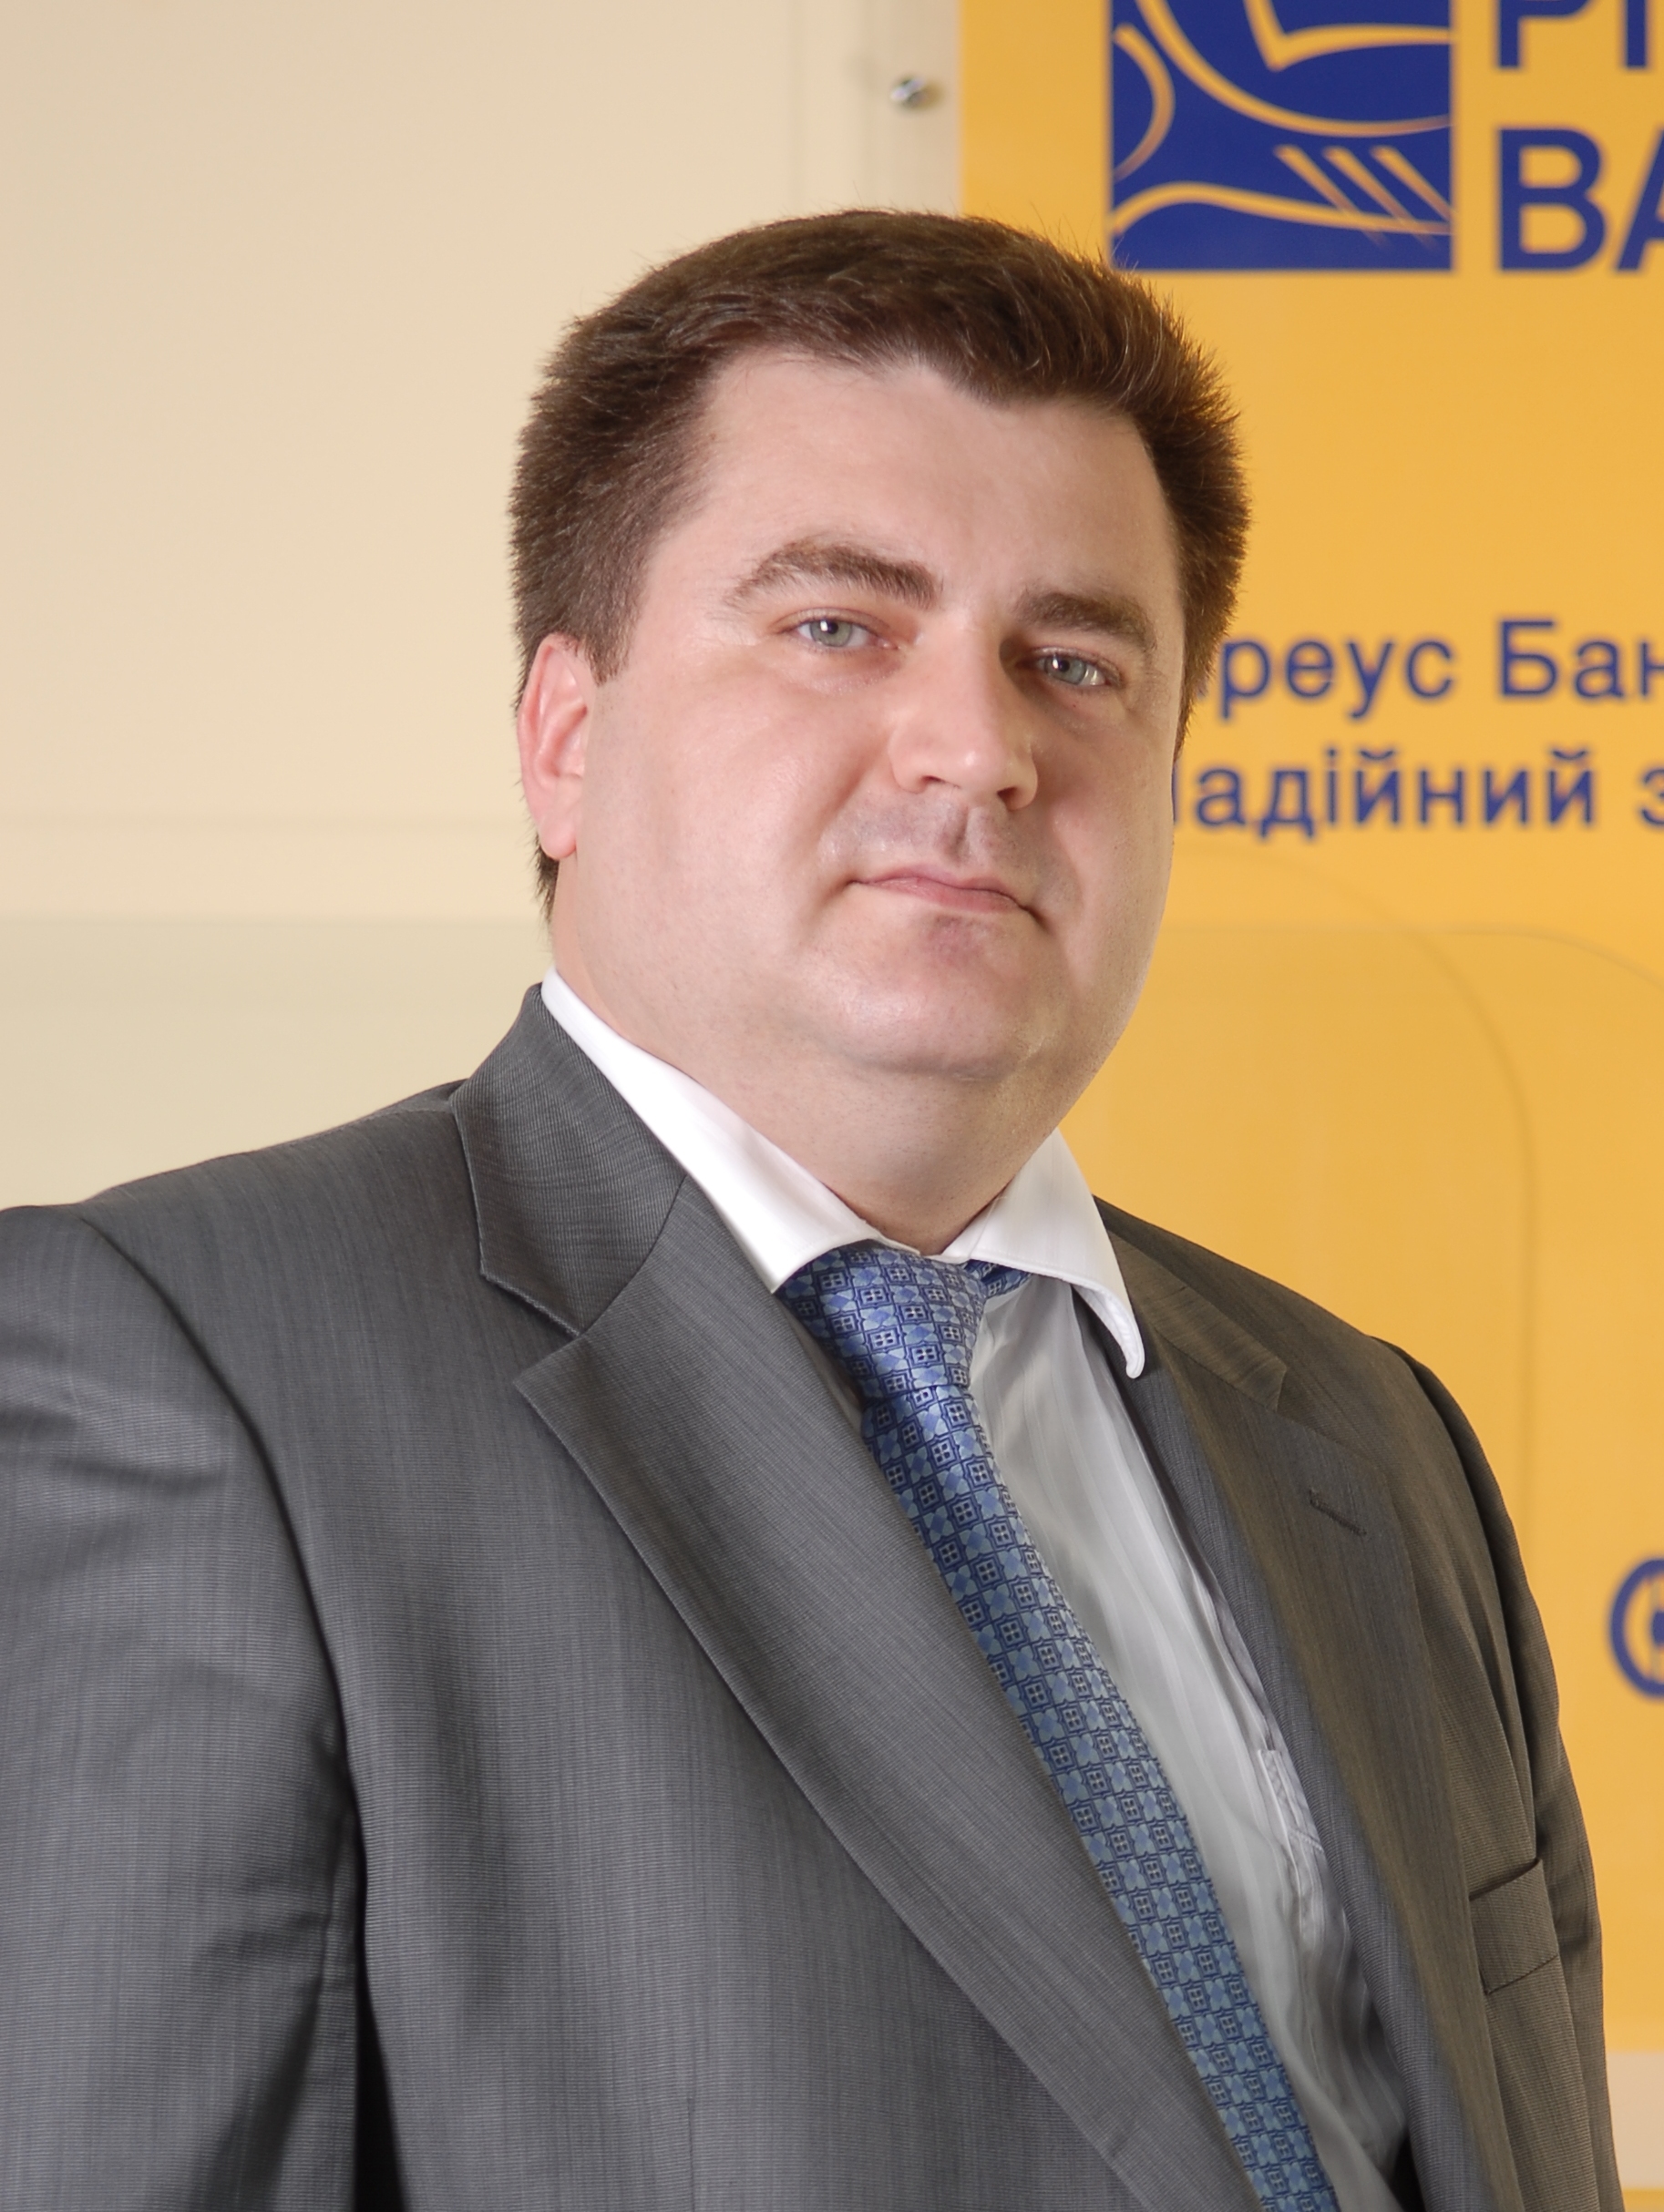 Дмитрий Мусиенко, член правления. директор департамента филиальной сети Пиреус Банка в Украине: 